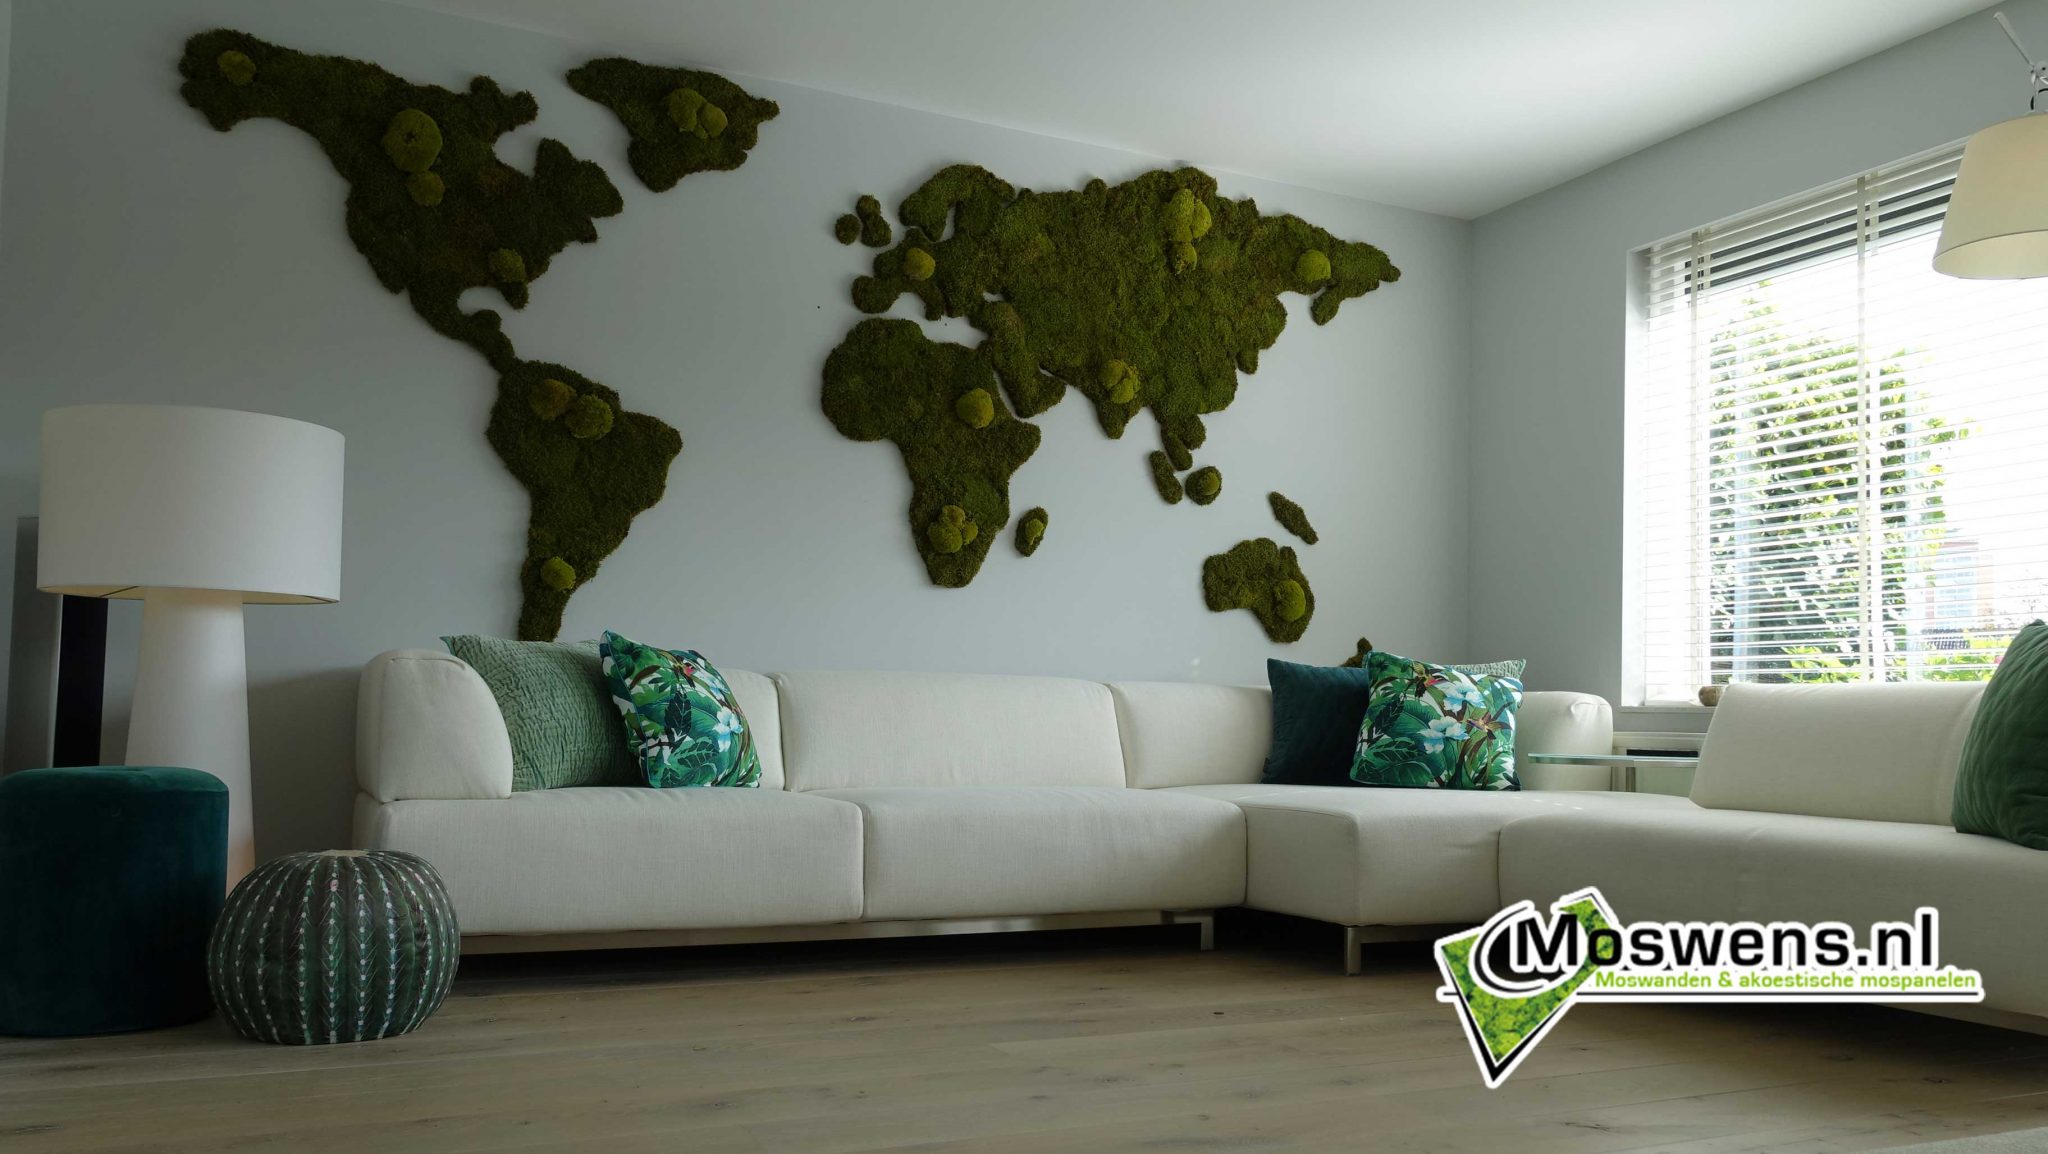 Wereldkaart van mos Moswens | Mosschilderijen,